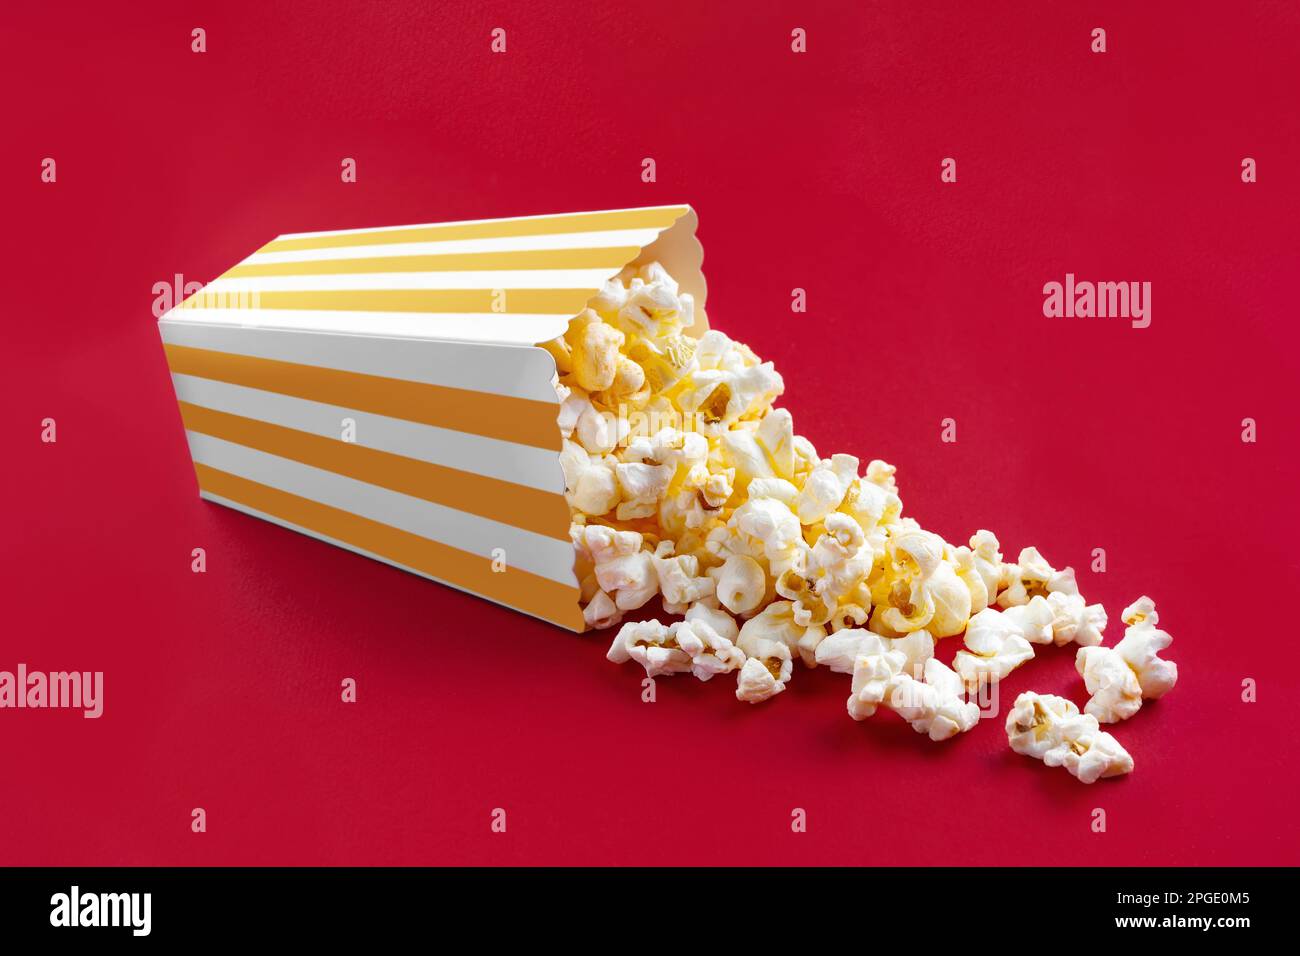 Gustoso popcorn al formaggio che cade da un secchio di cartone a strisce gialle, isolato su sfondo rosso. Dispersione di grani di popcorn. Film, cinema e ingresso Foto Stock